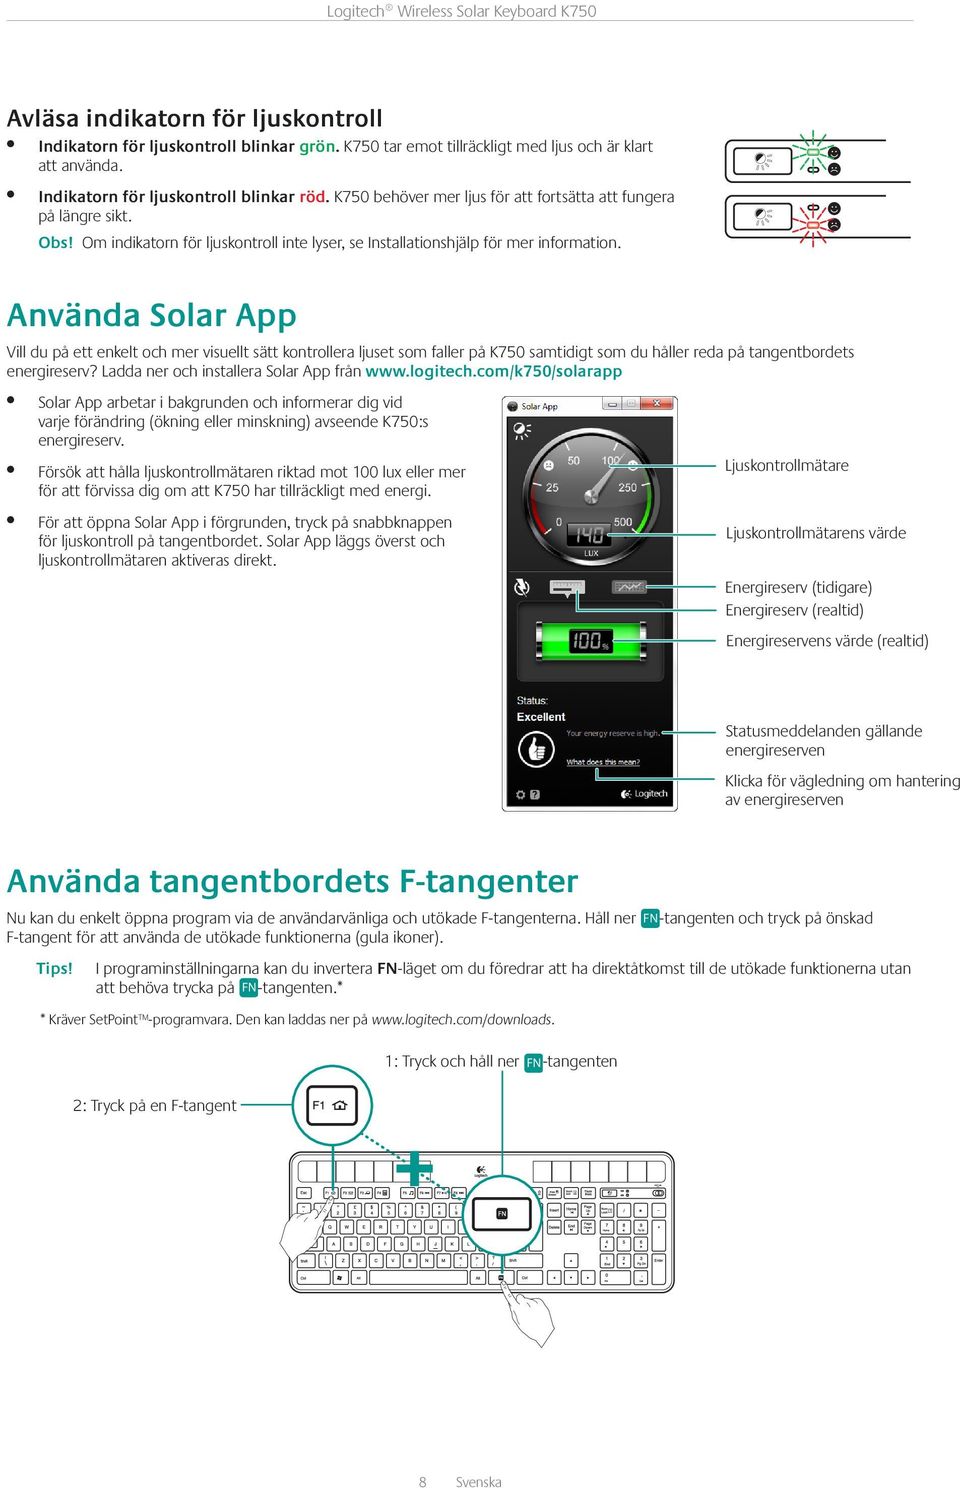 Använda Solar App Vill du på ett enkelt och mer visuellt sätt kontrollera ljuset som faller på K750 samtidigt som du håller reda på tangentbordets energireserv?